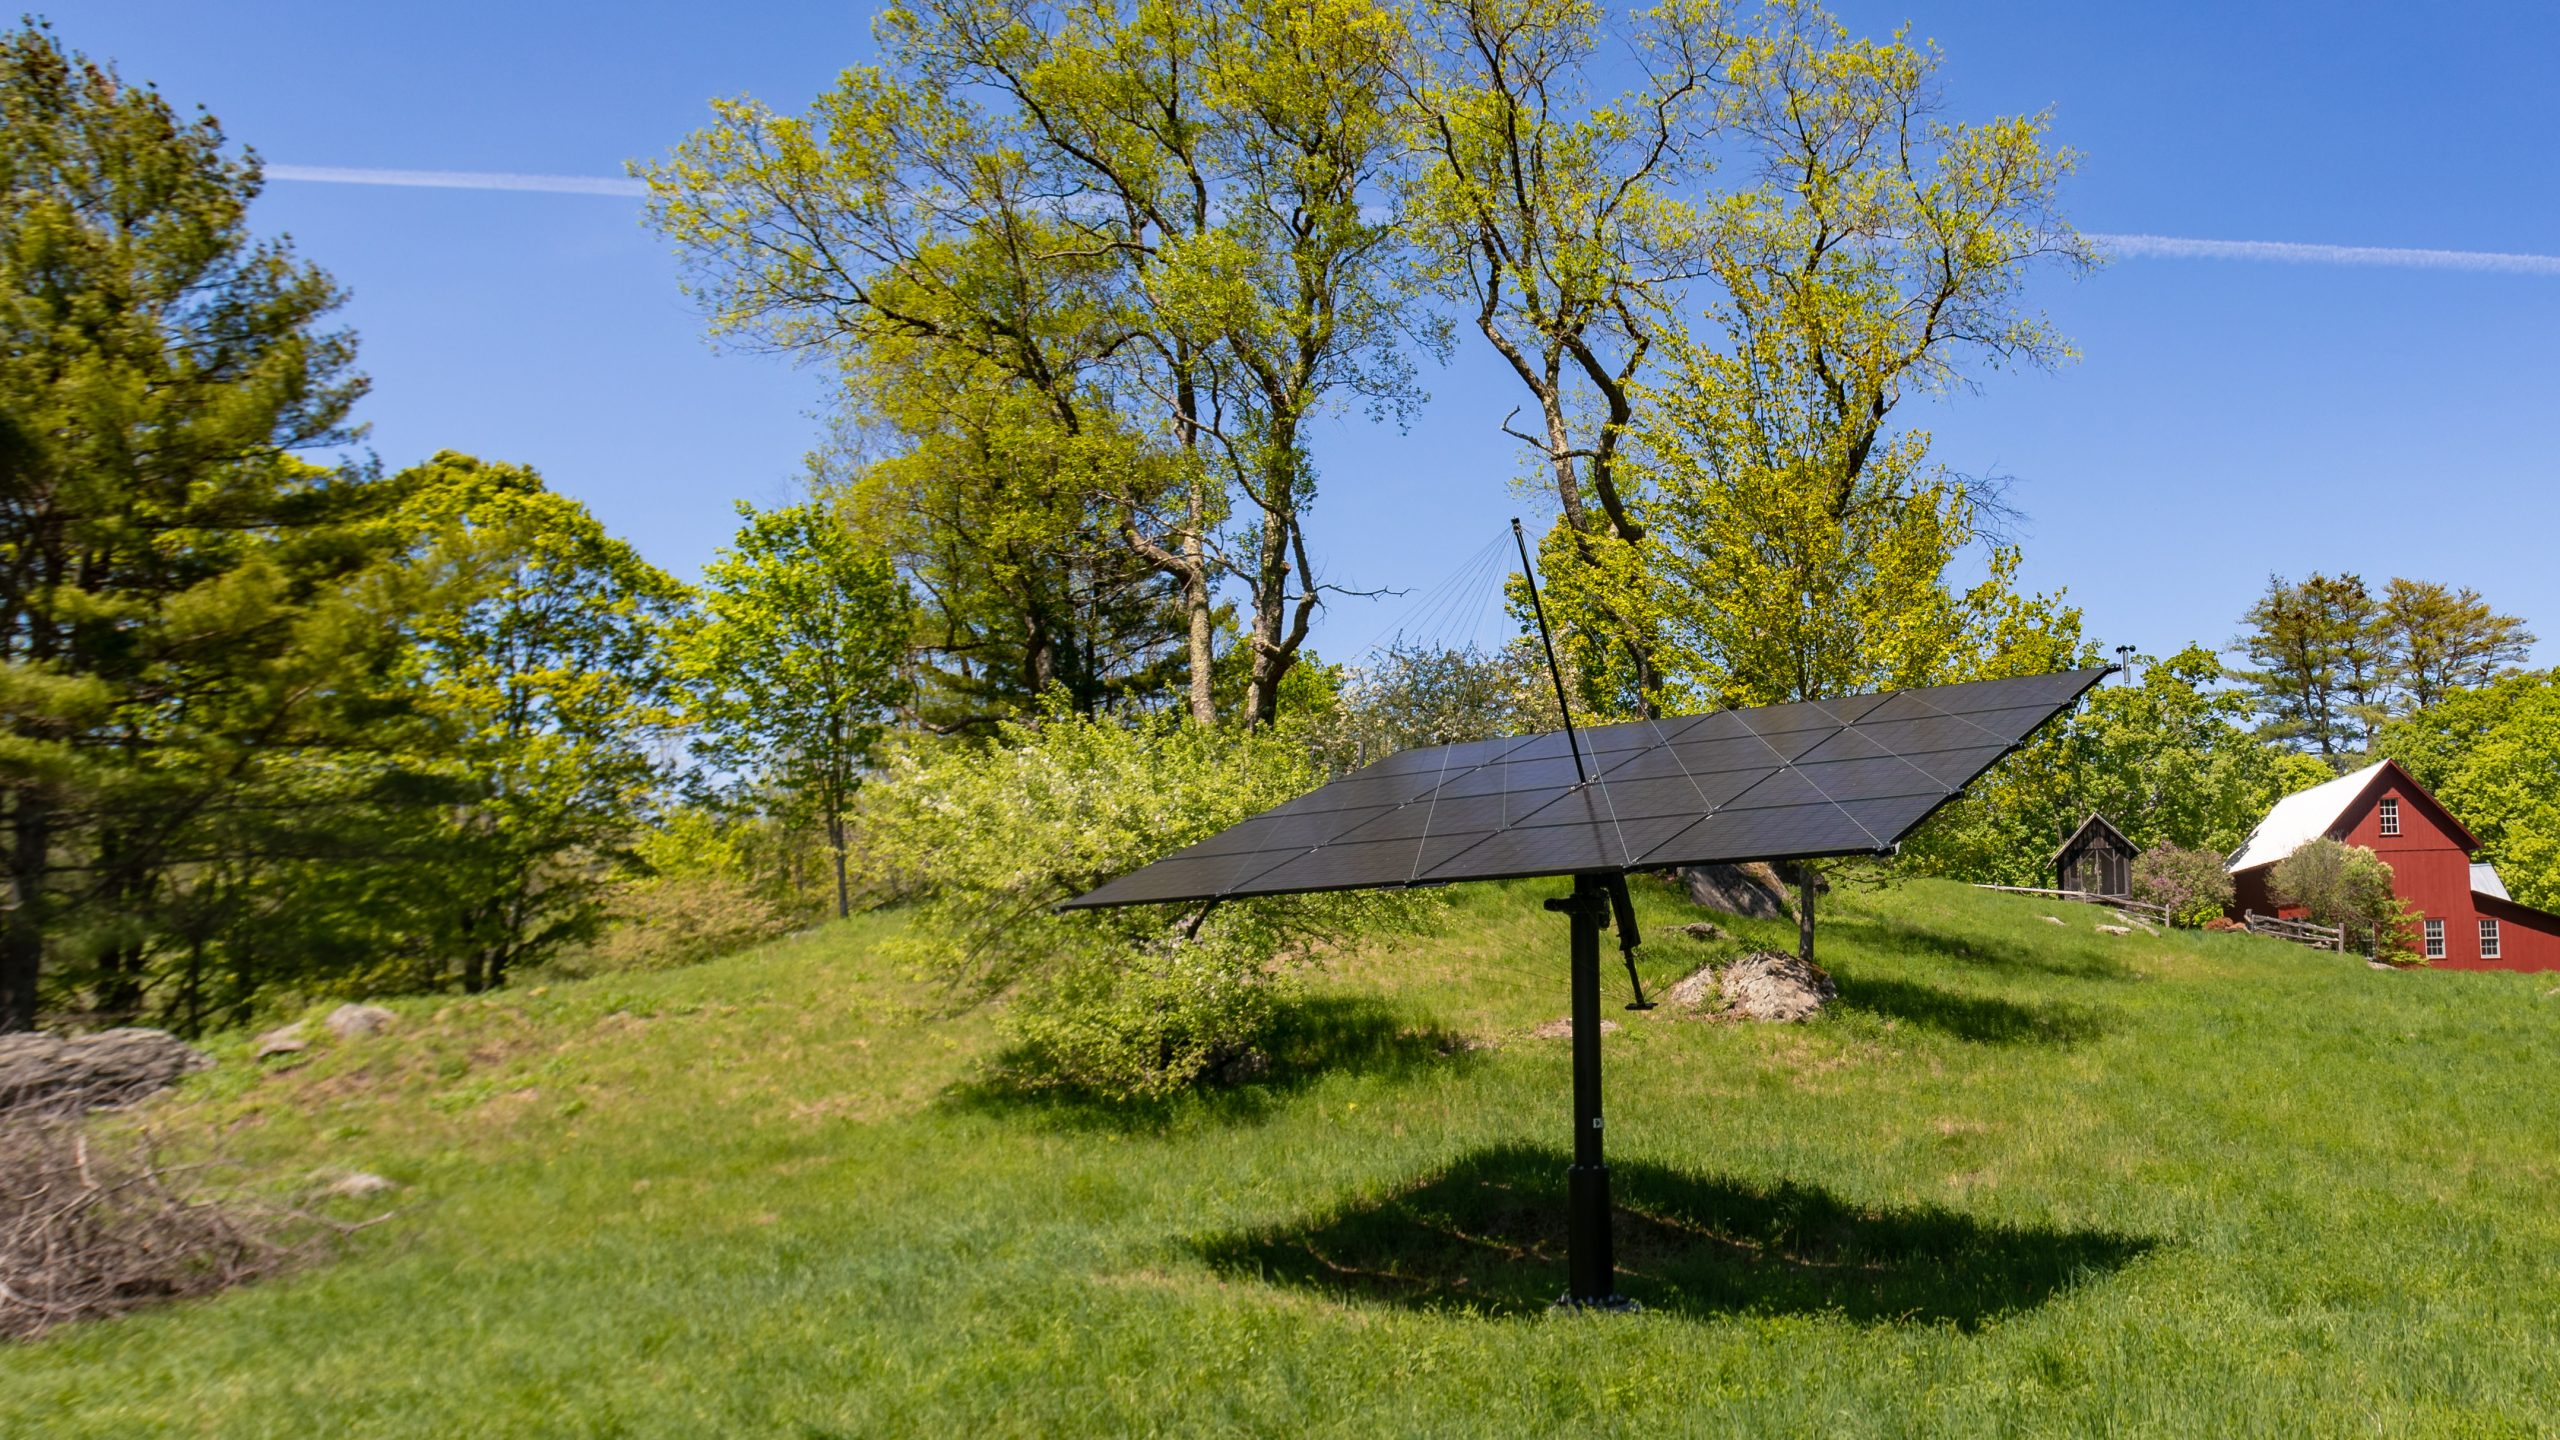 Solar tracker in a field